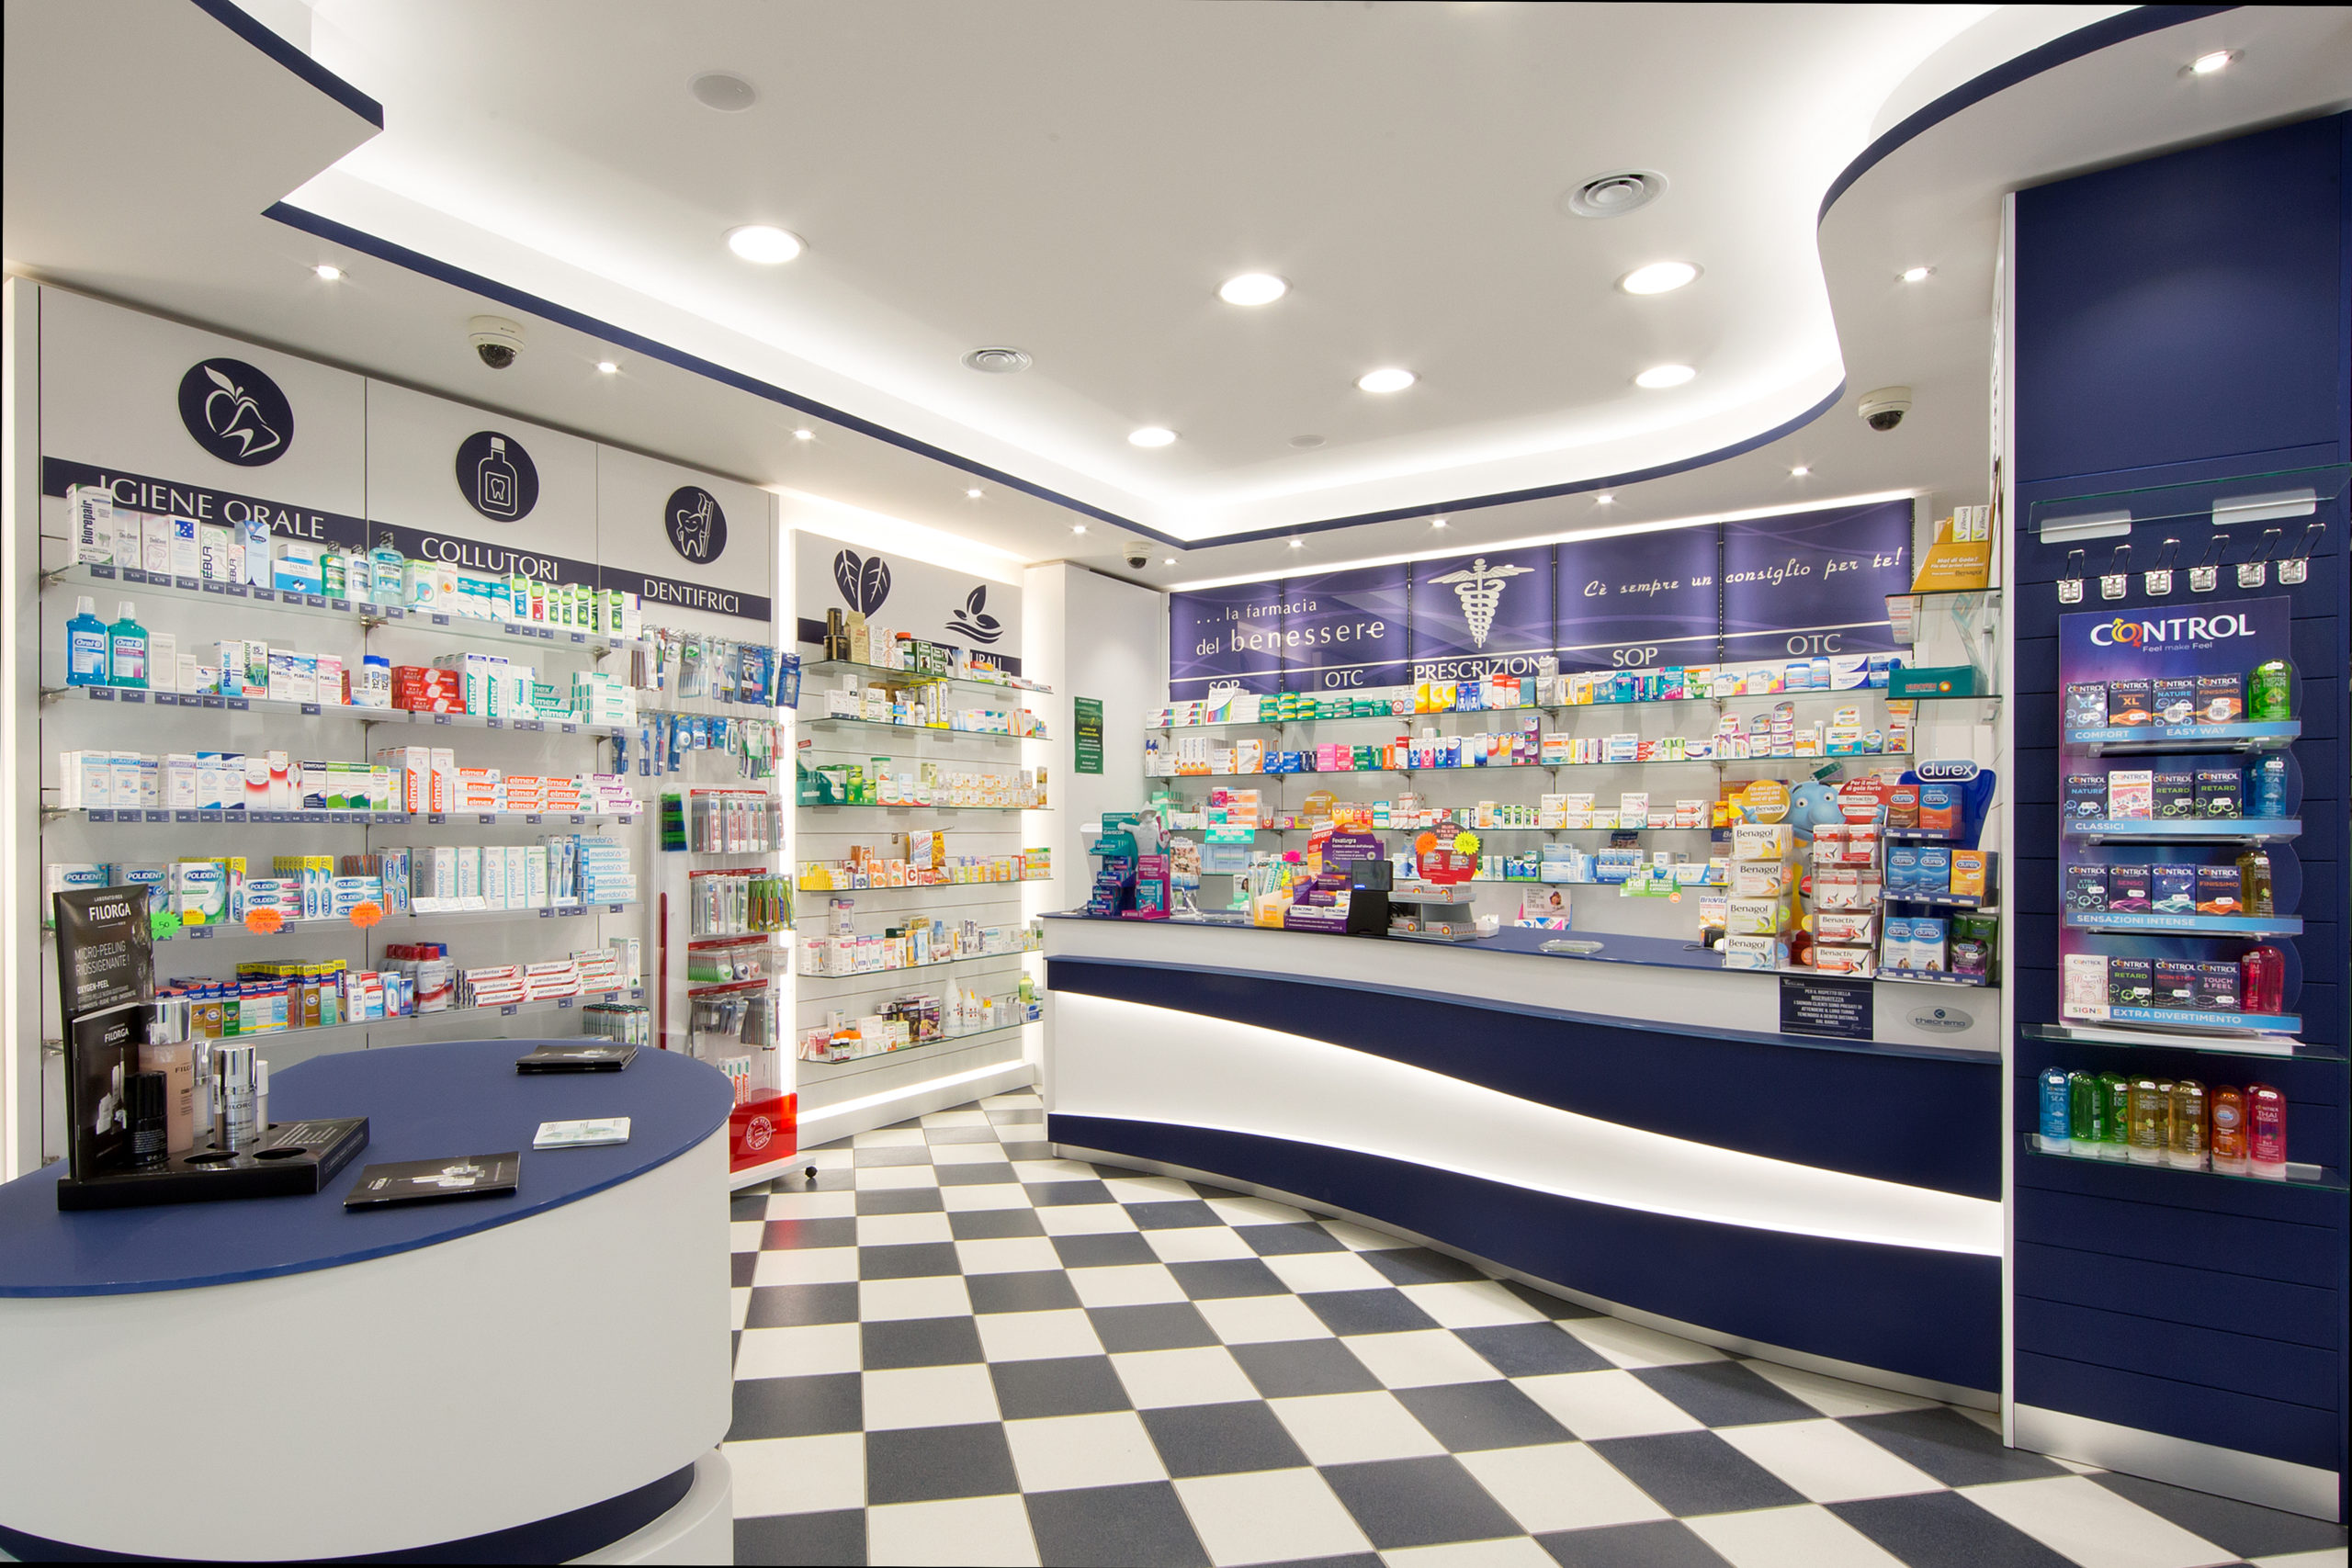 Banco-vendita-farmacia-atellana-ortadiatella-Theorema-arredamenti-farmacie.jpg (1)